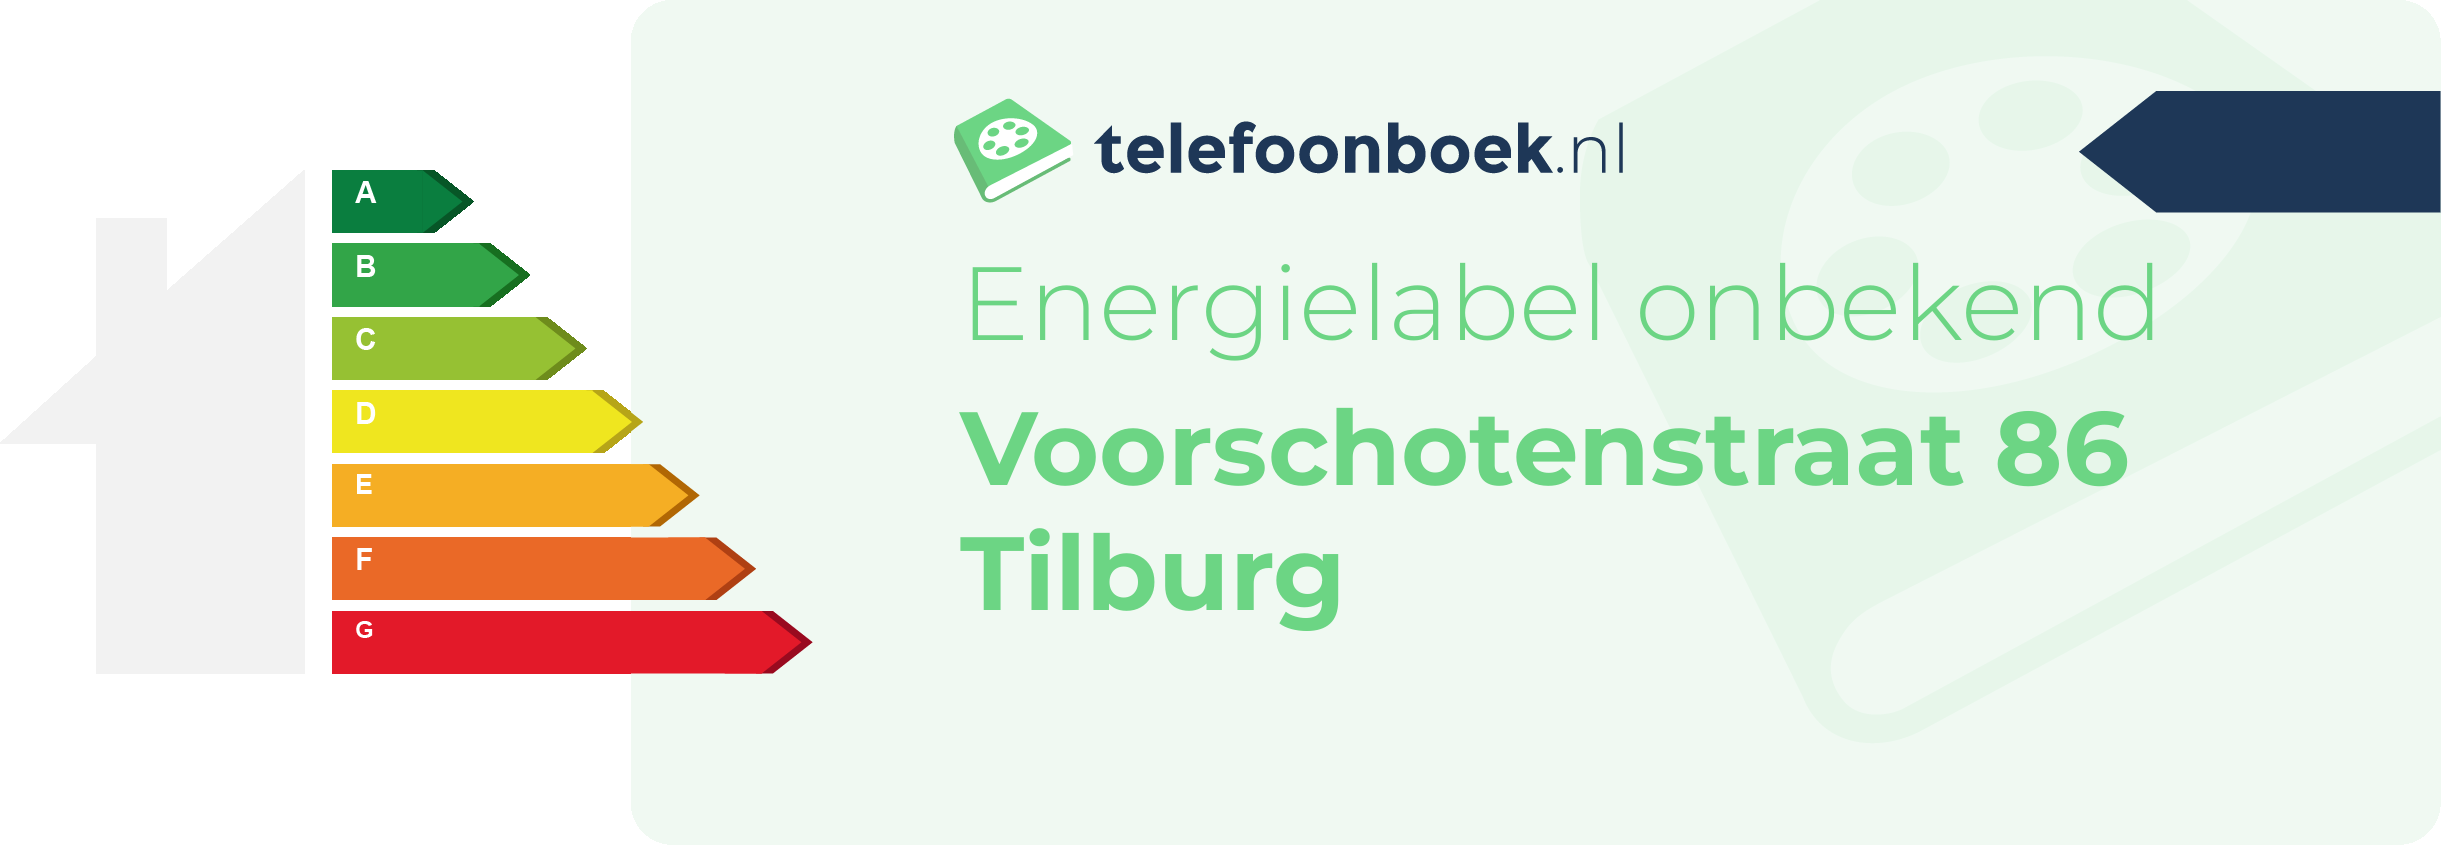 Energielabel Voorschotenstraat 86 Tilburg